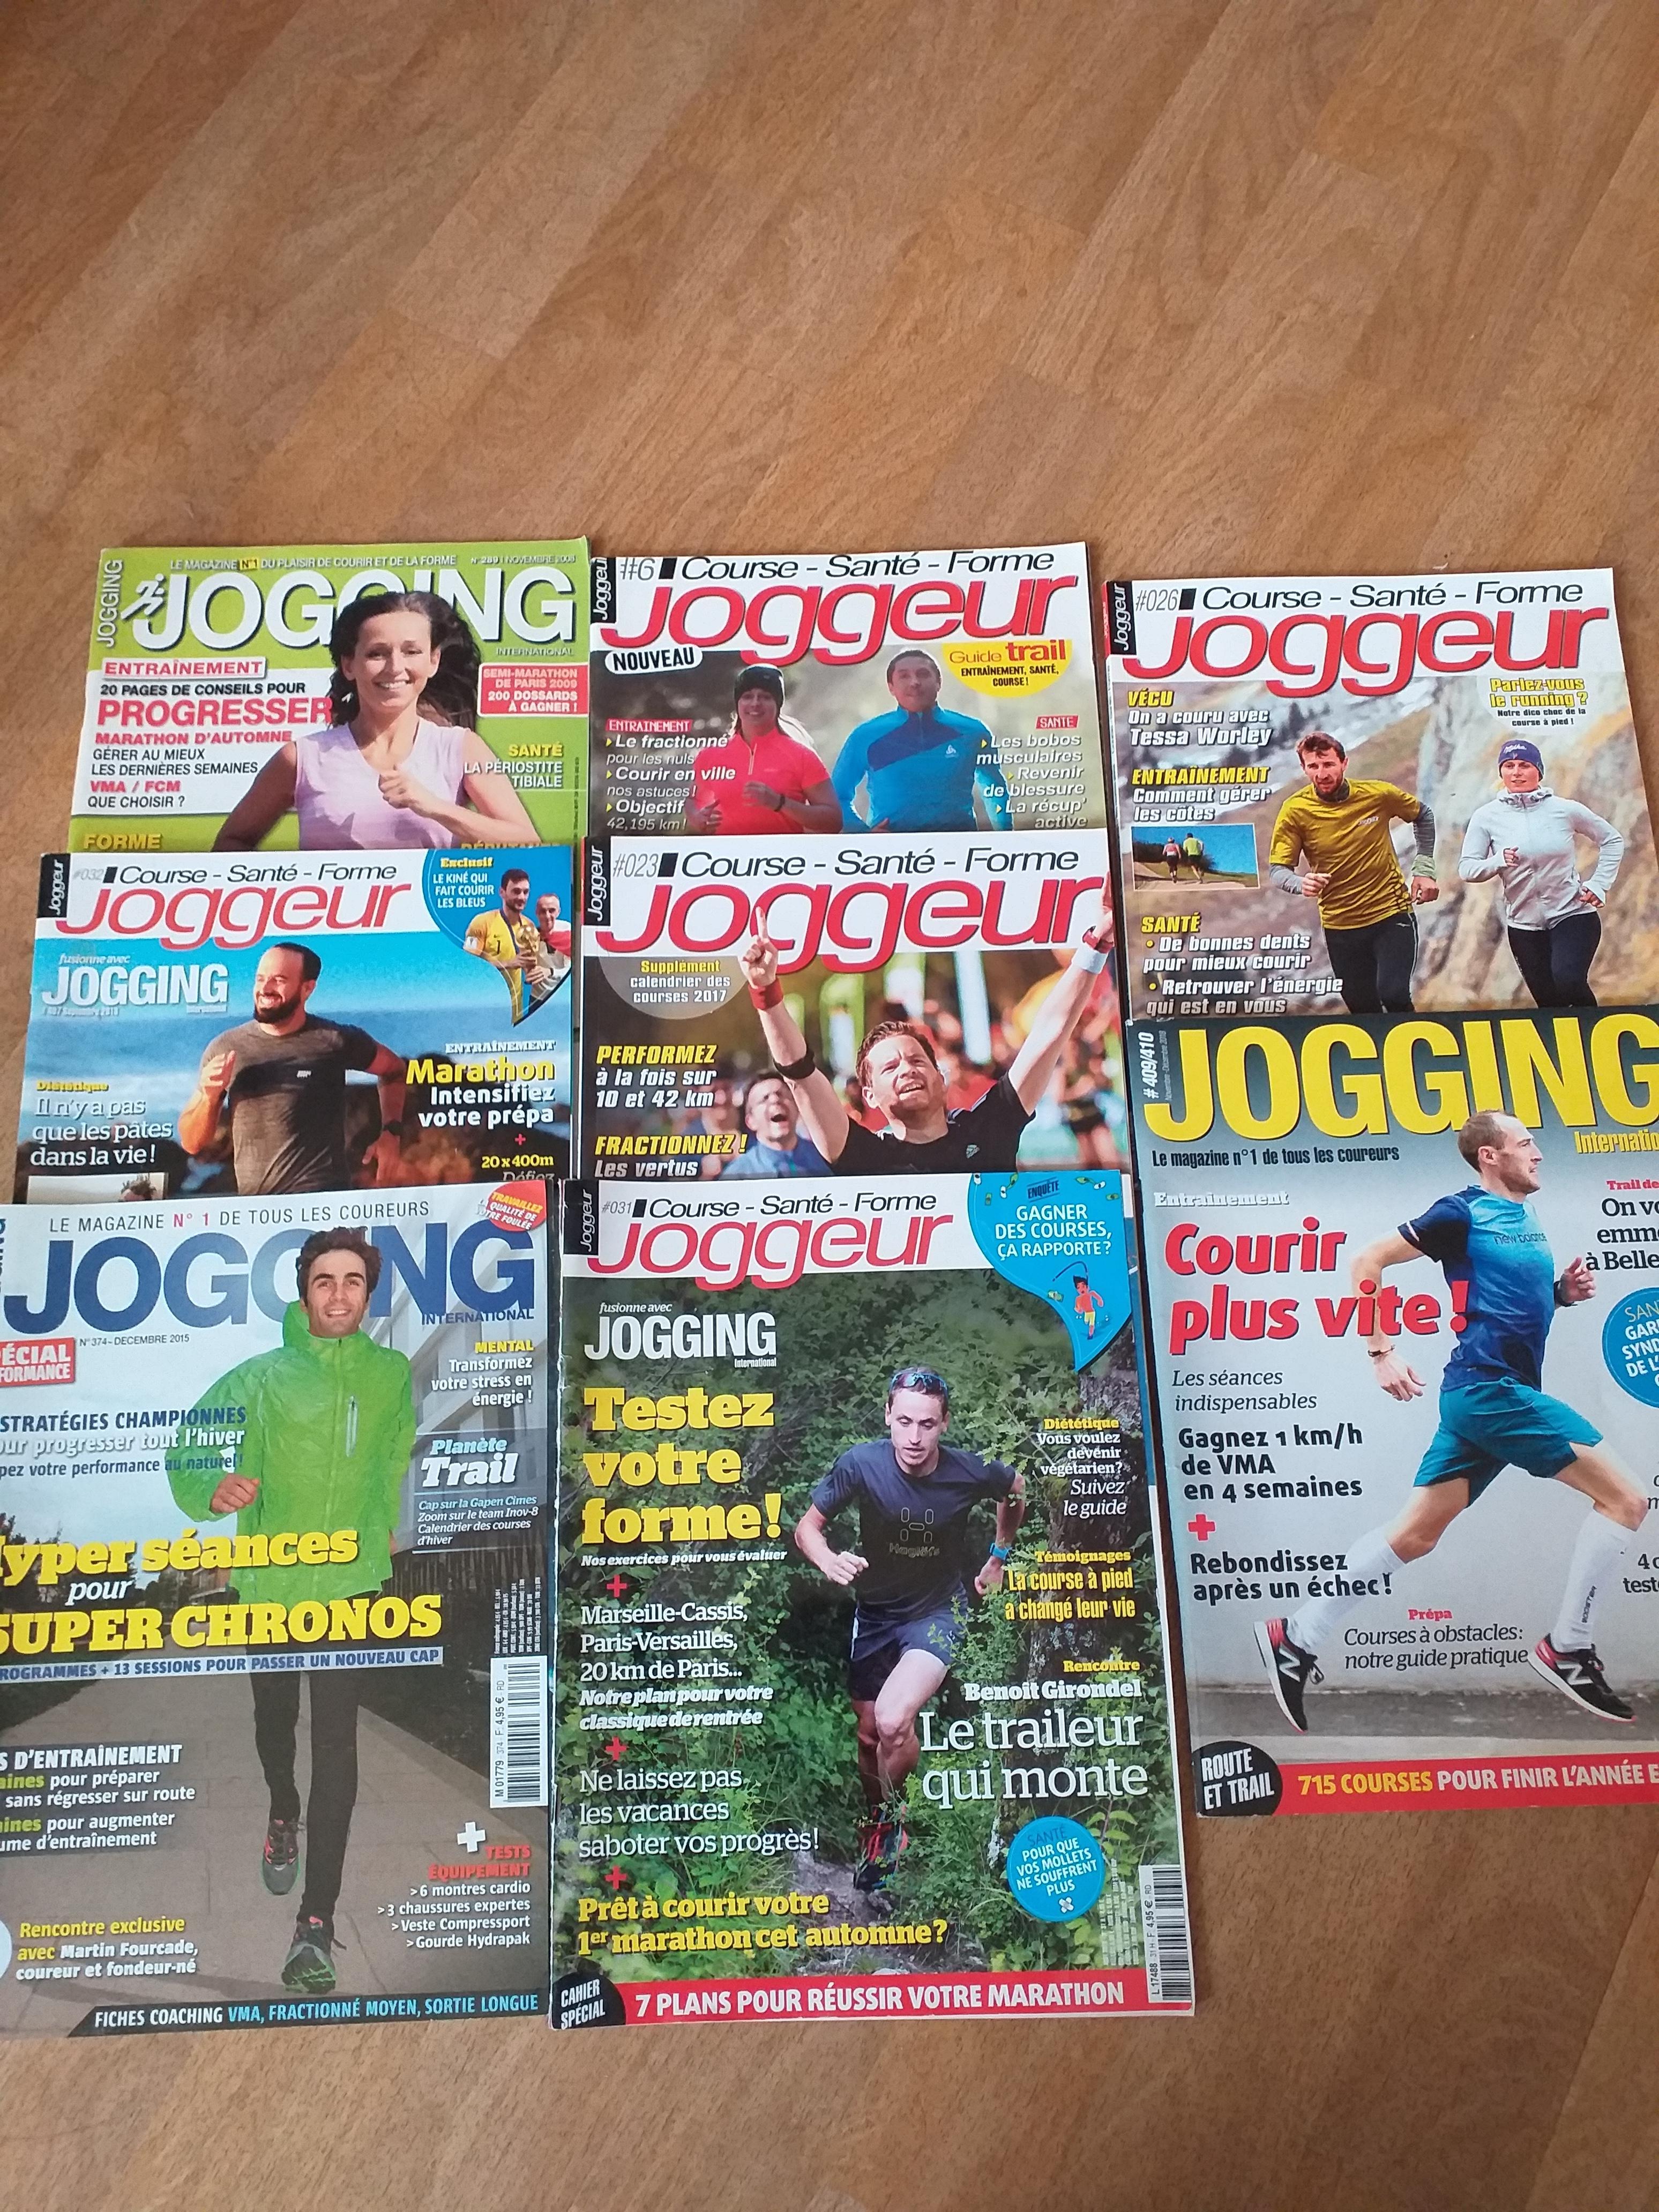 troc de troc magazine joggeur et jogging image 1